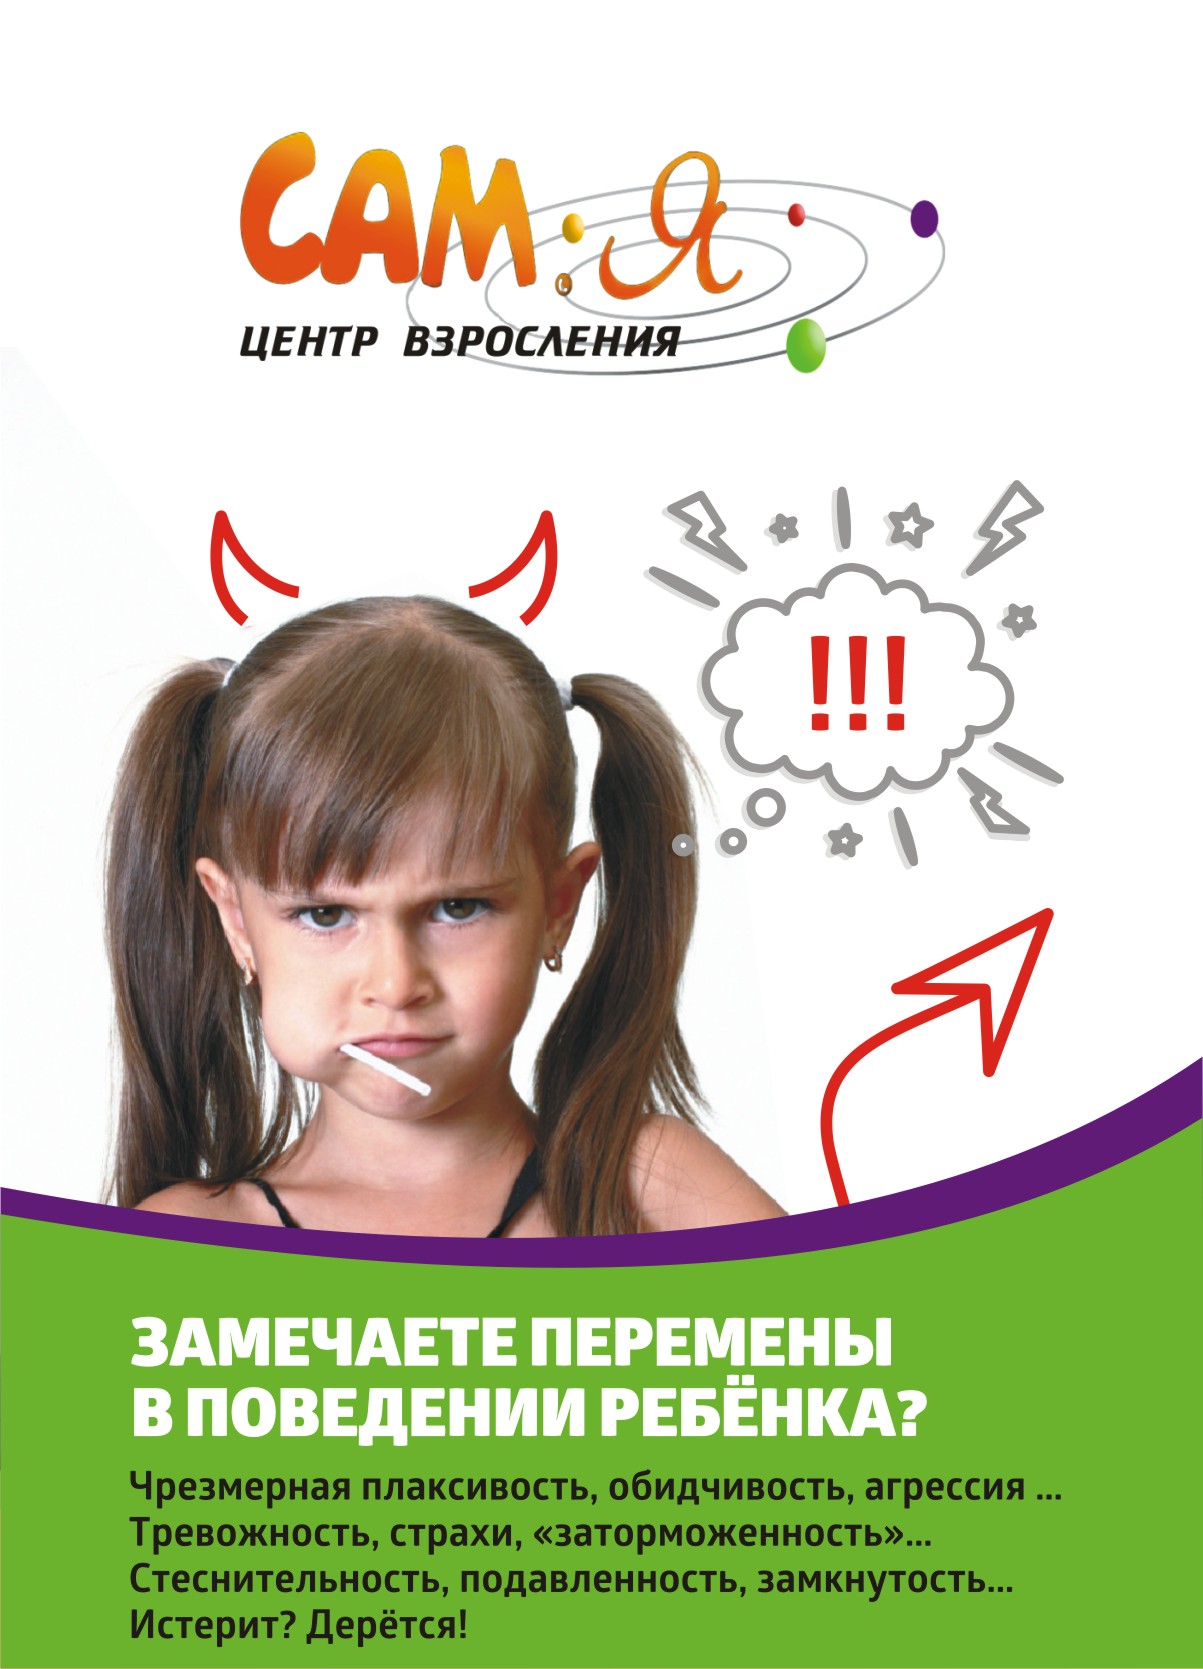 Развитие навыков общения у детей и подростков, тренинг эффективное общение,  Челябинск